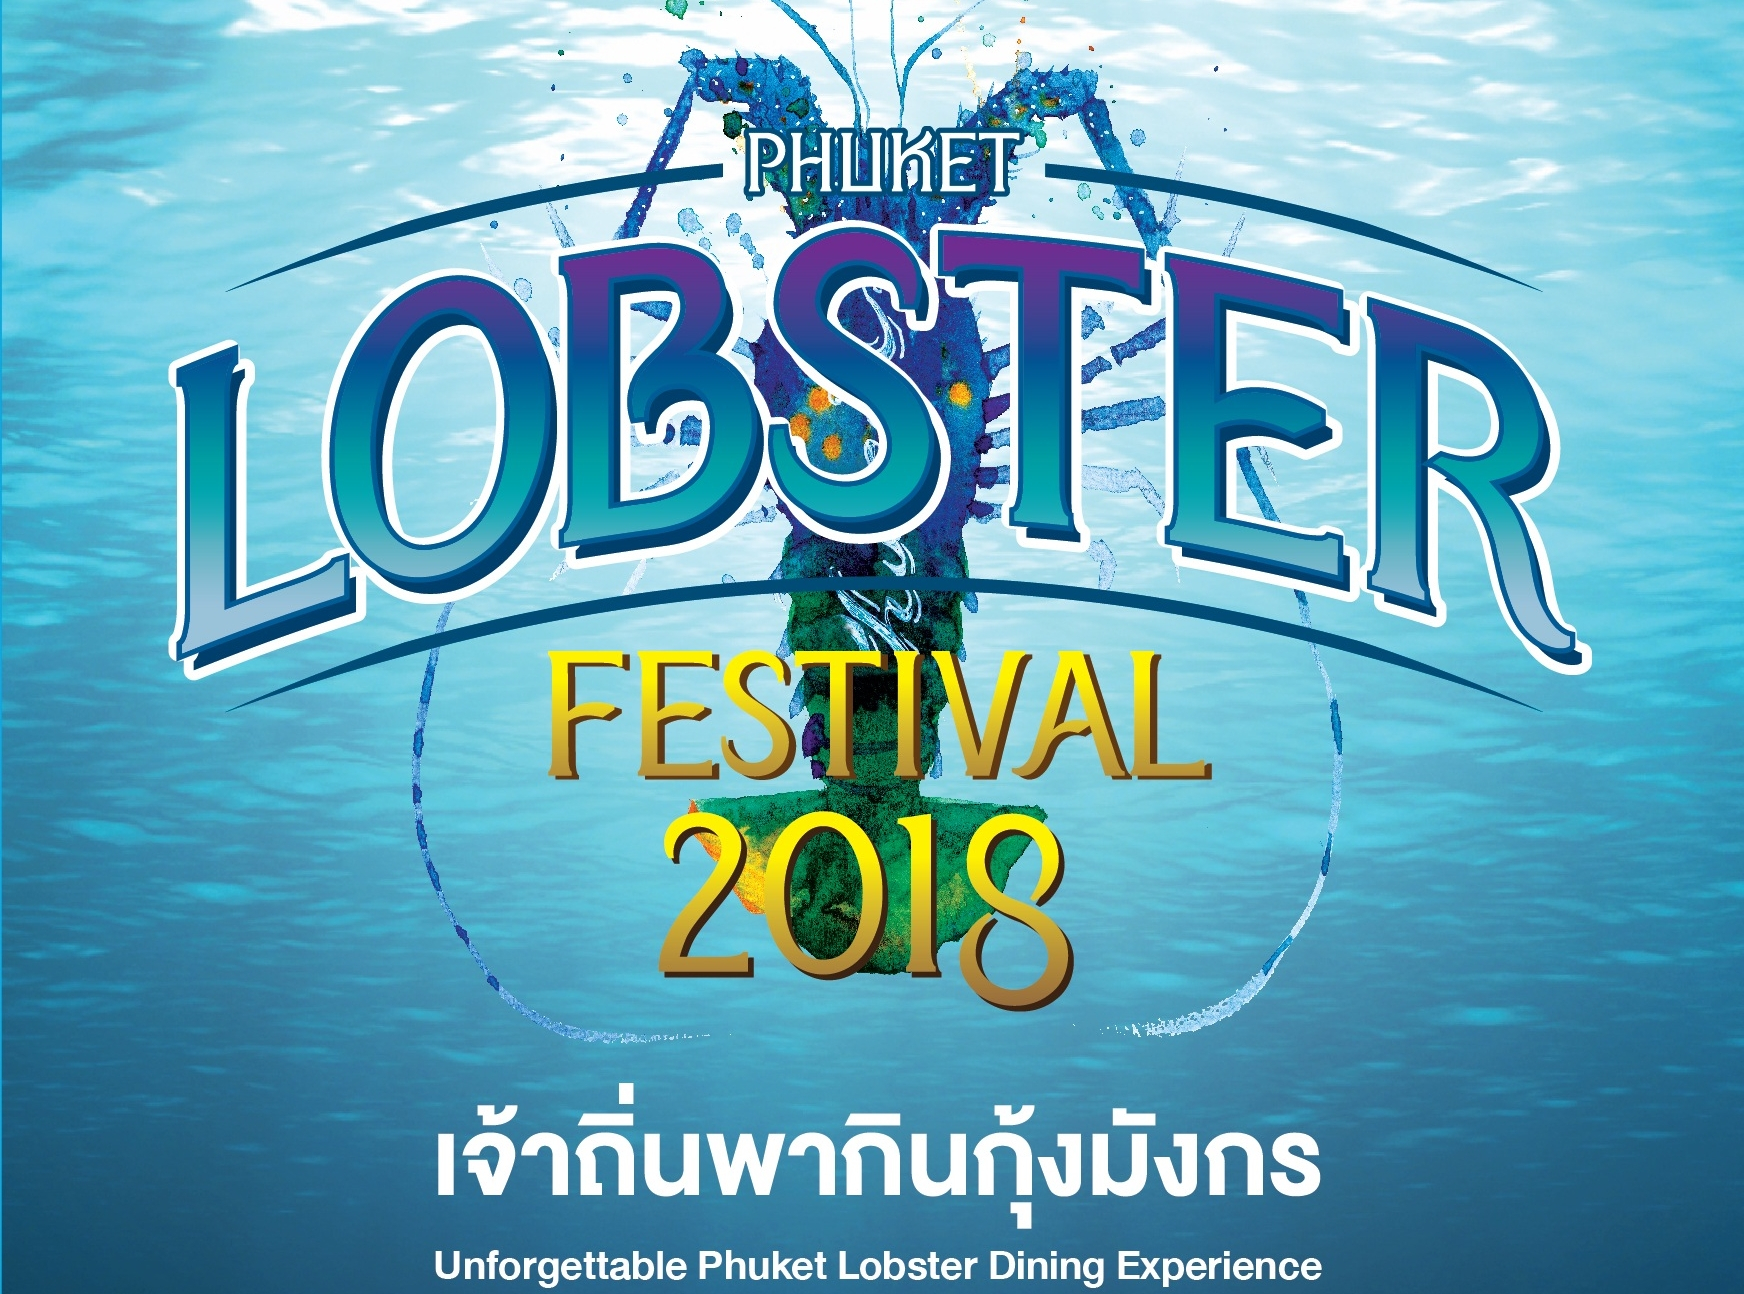 บริษัท ประชารัฐรักสามัคคีภูเก็ตฯ จัดงาน Phuket Lobster Festival 2018